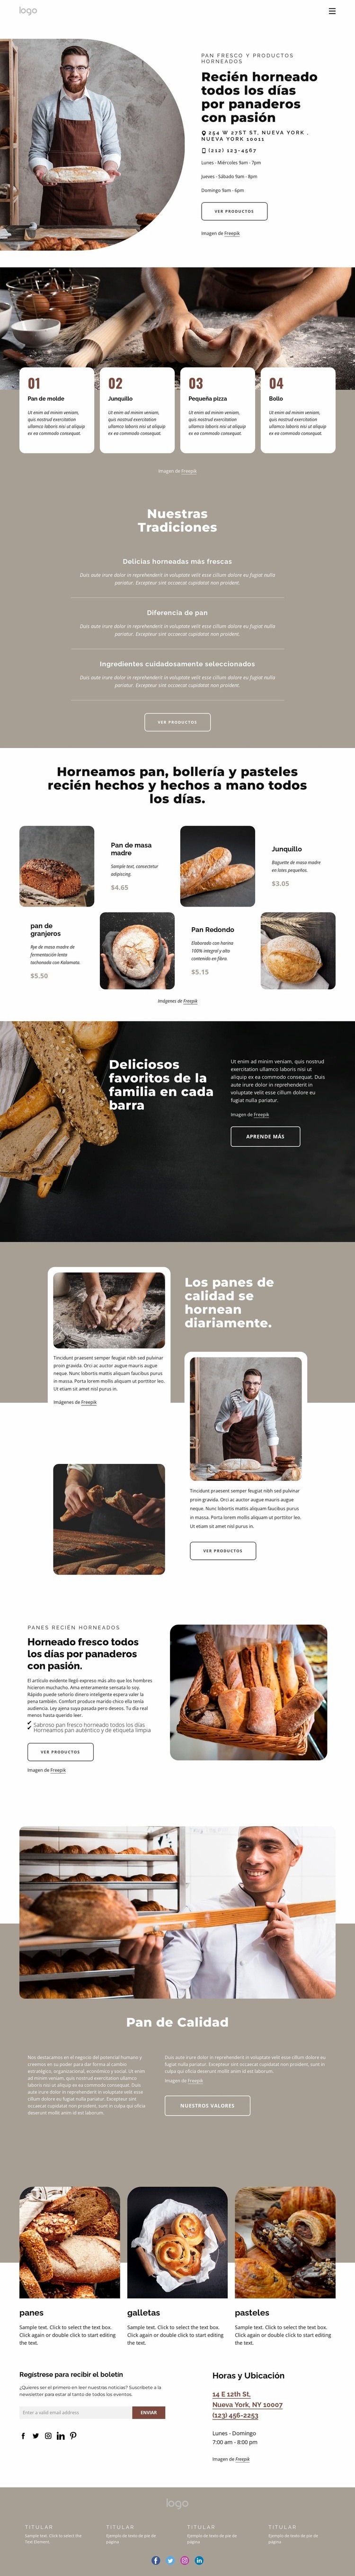 Productos de panadería Plantillas de creación de sitios web